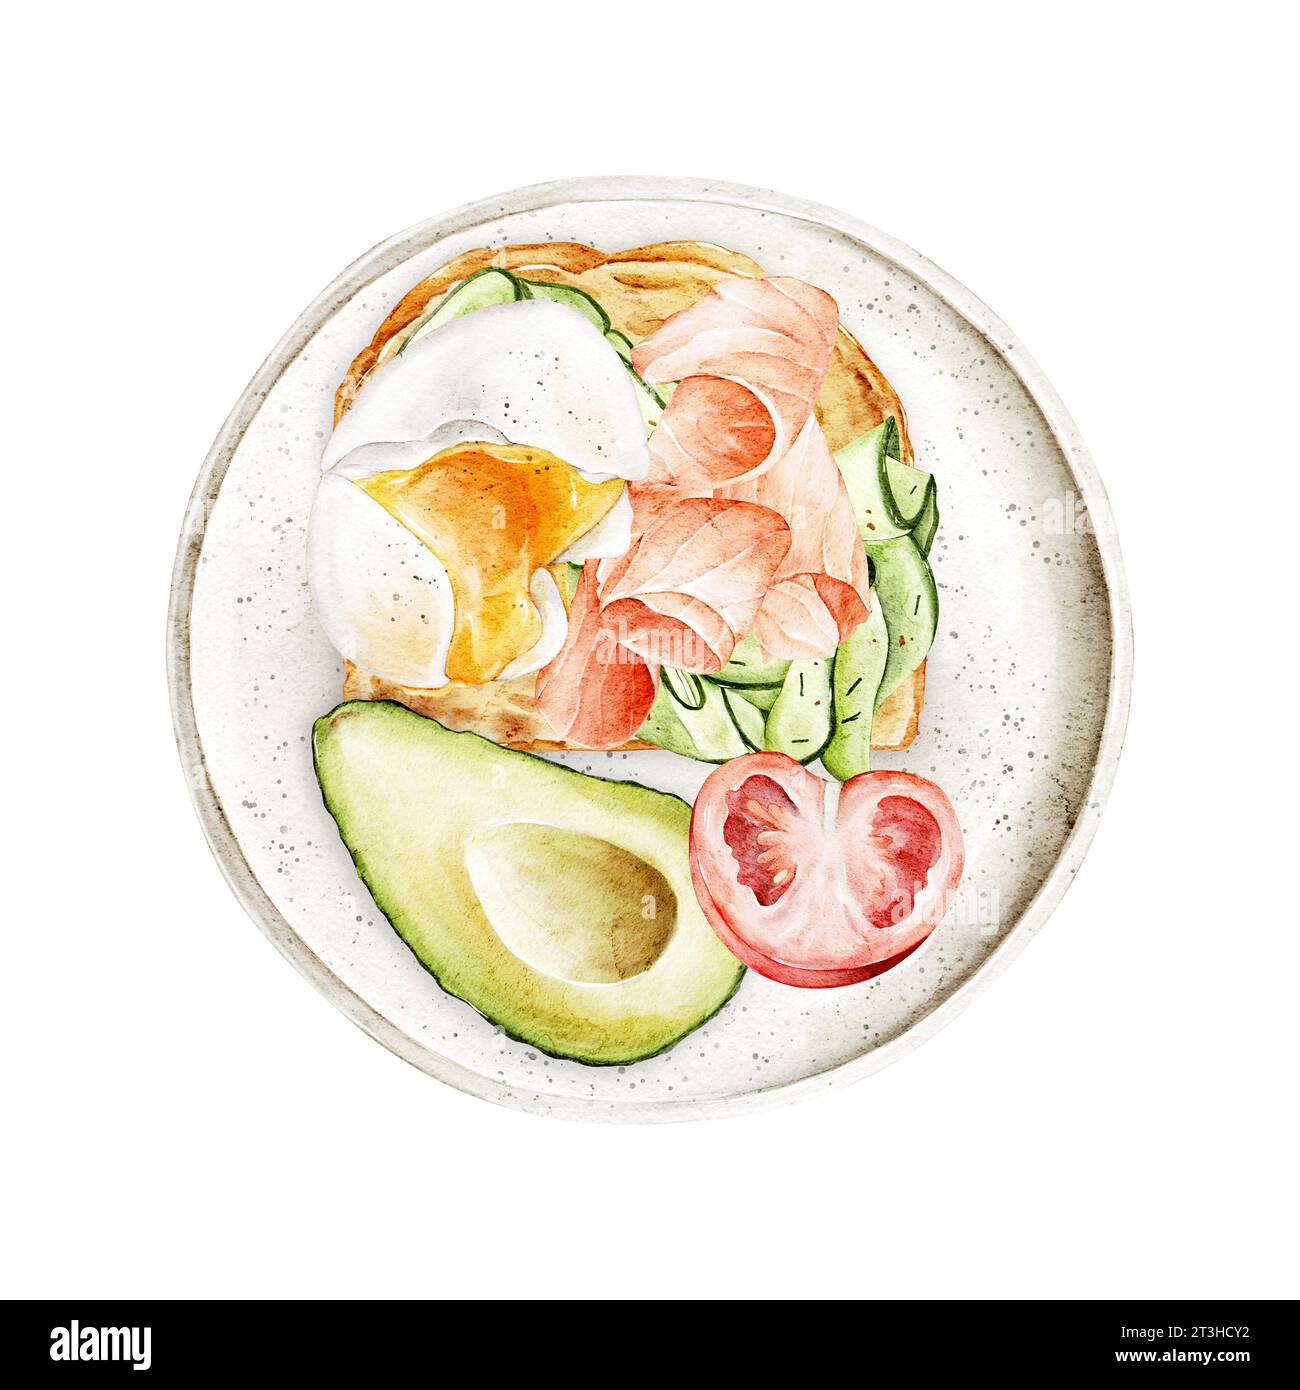 Sandwich aquarelle avec saumon, concombres, œuf poché et avocat frais, tomate sur une assiette. Illustration dessinée à la main pour le menu du petit déjeuner, livre de cuisine, si Banque D'Images